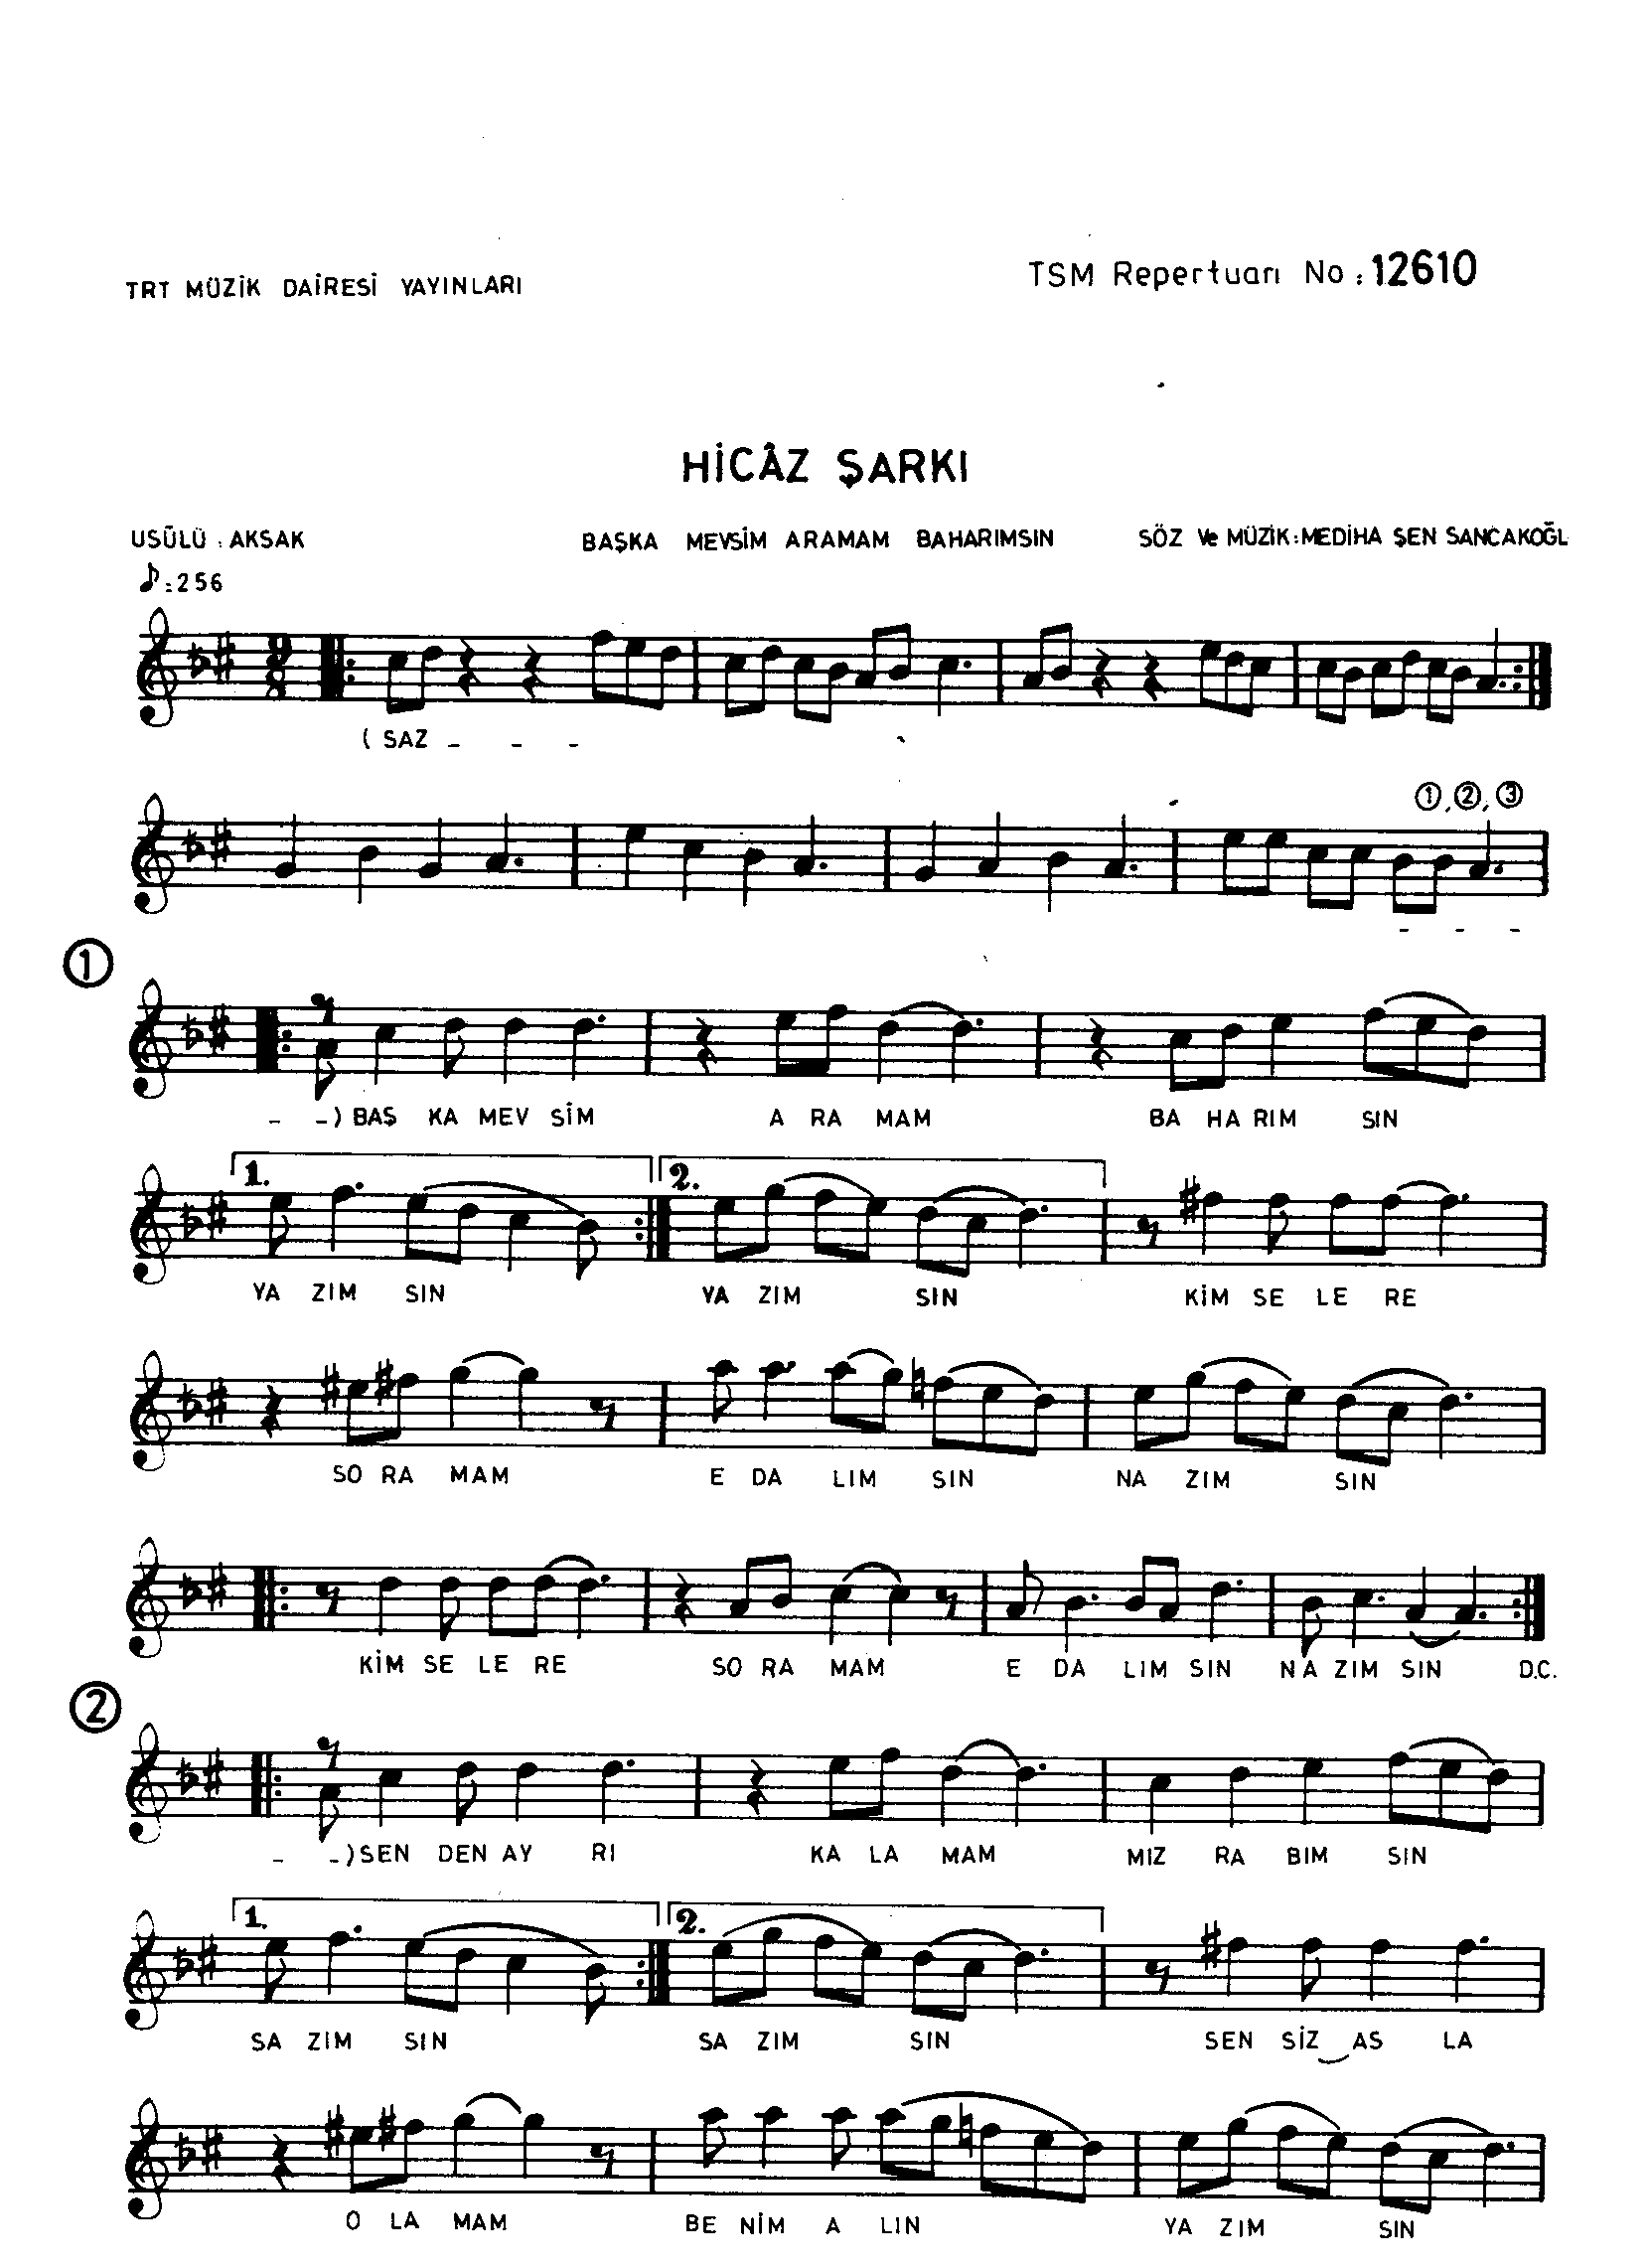 Hicâz - Şarkı - Mediha Şen Sancakoğlu - Sayfa 1